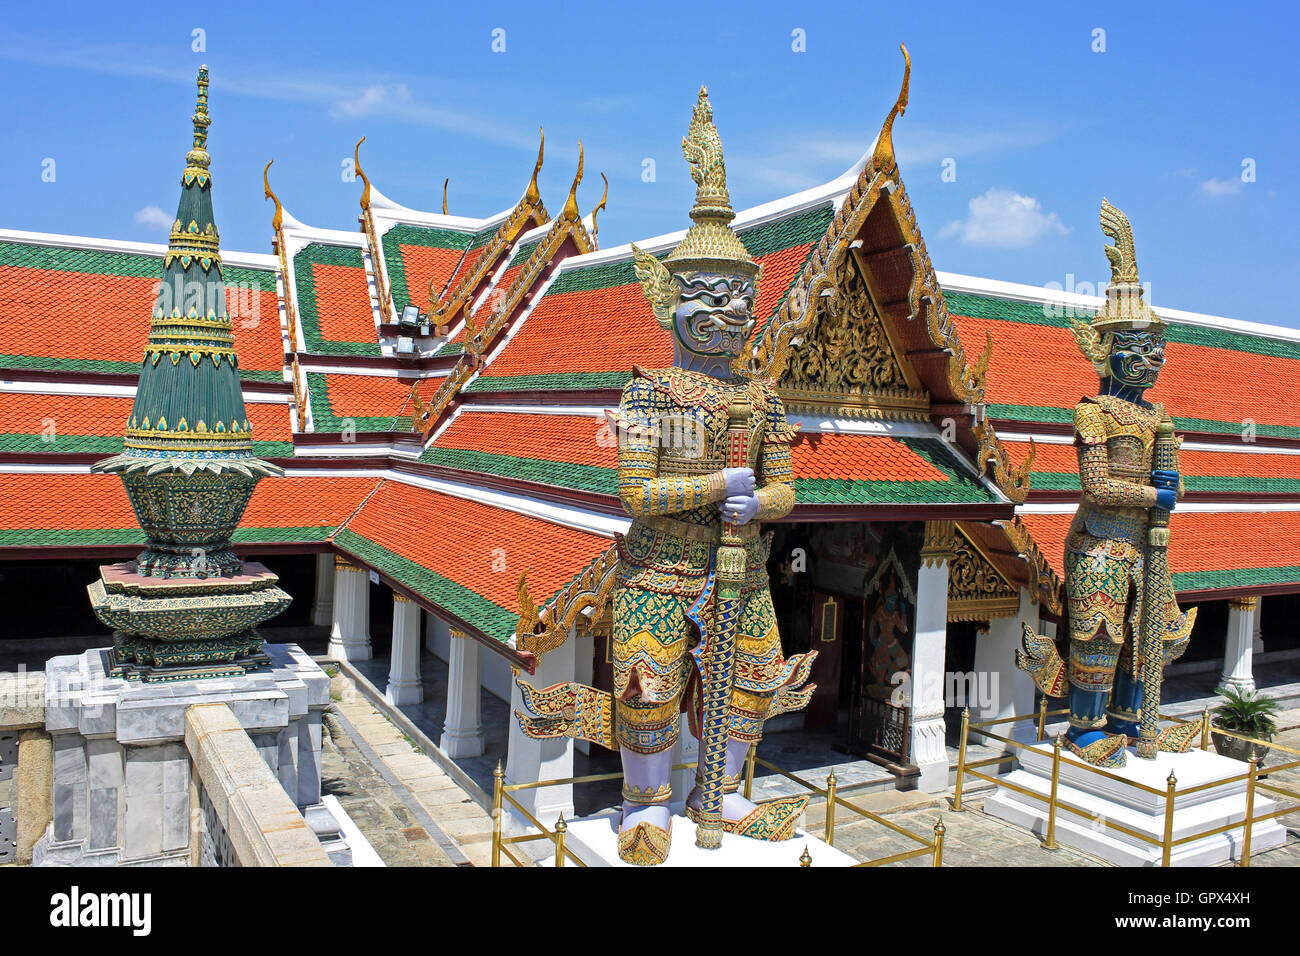 La porte Wat Phra Kaew est protégée par une paire de statues yakshas, des géants mythiques mesurant 5 mètres de haut. Grand Palais Bangkok Thaïlande Banque D'Images